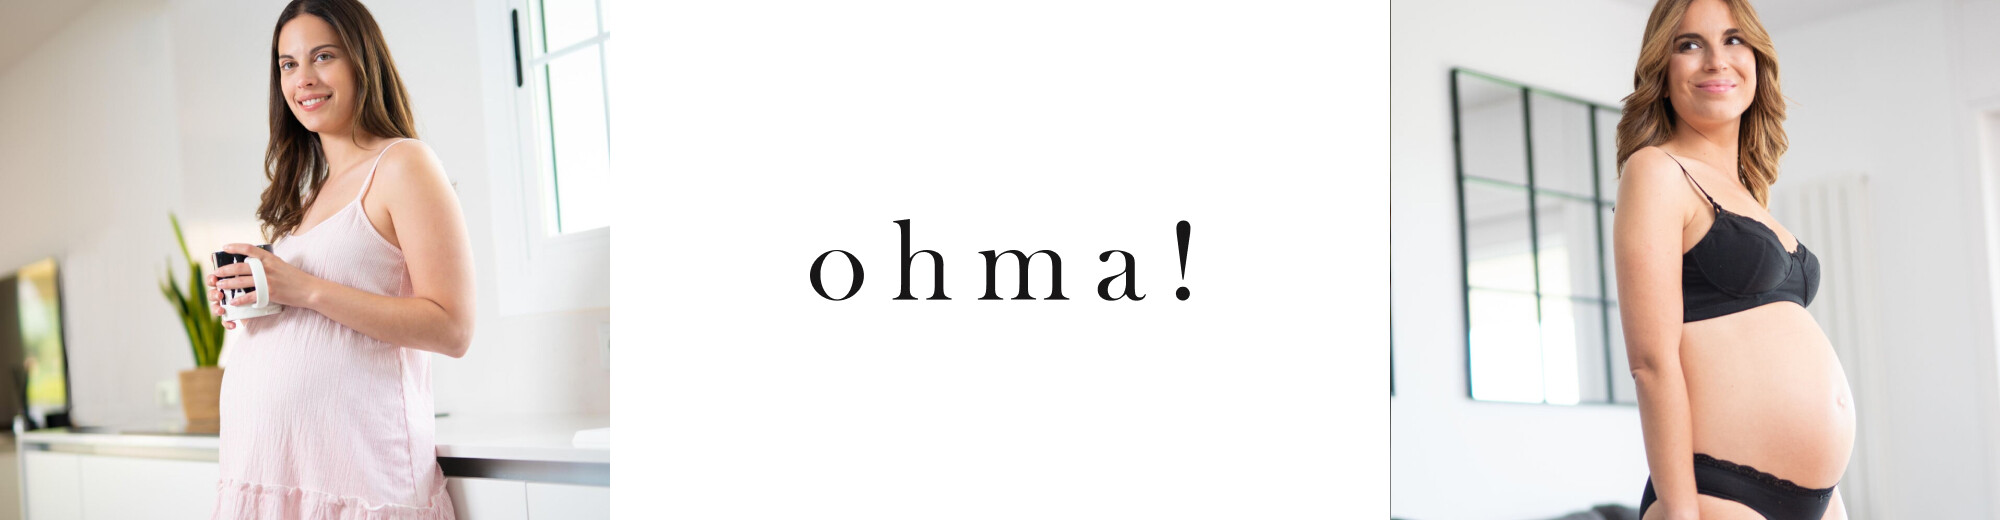 Ohma, Nueva colección